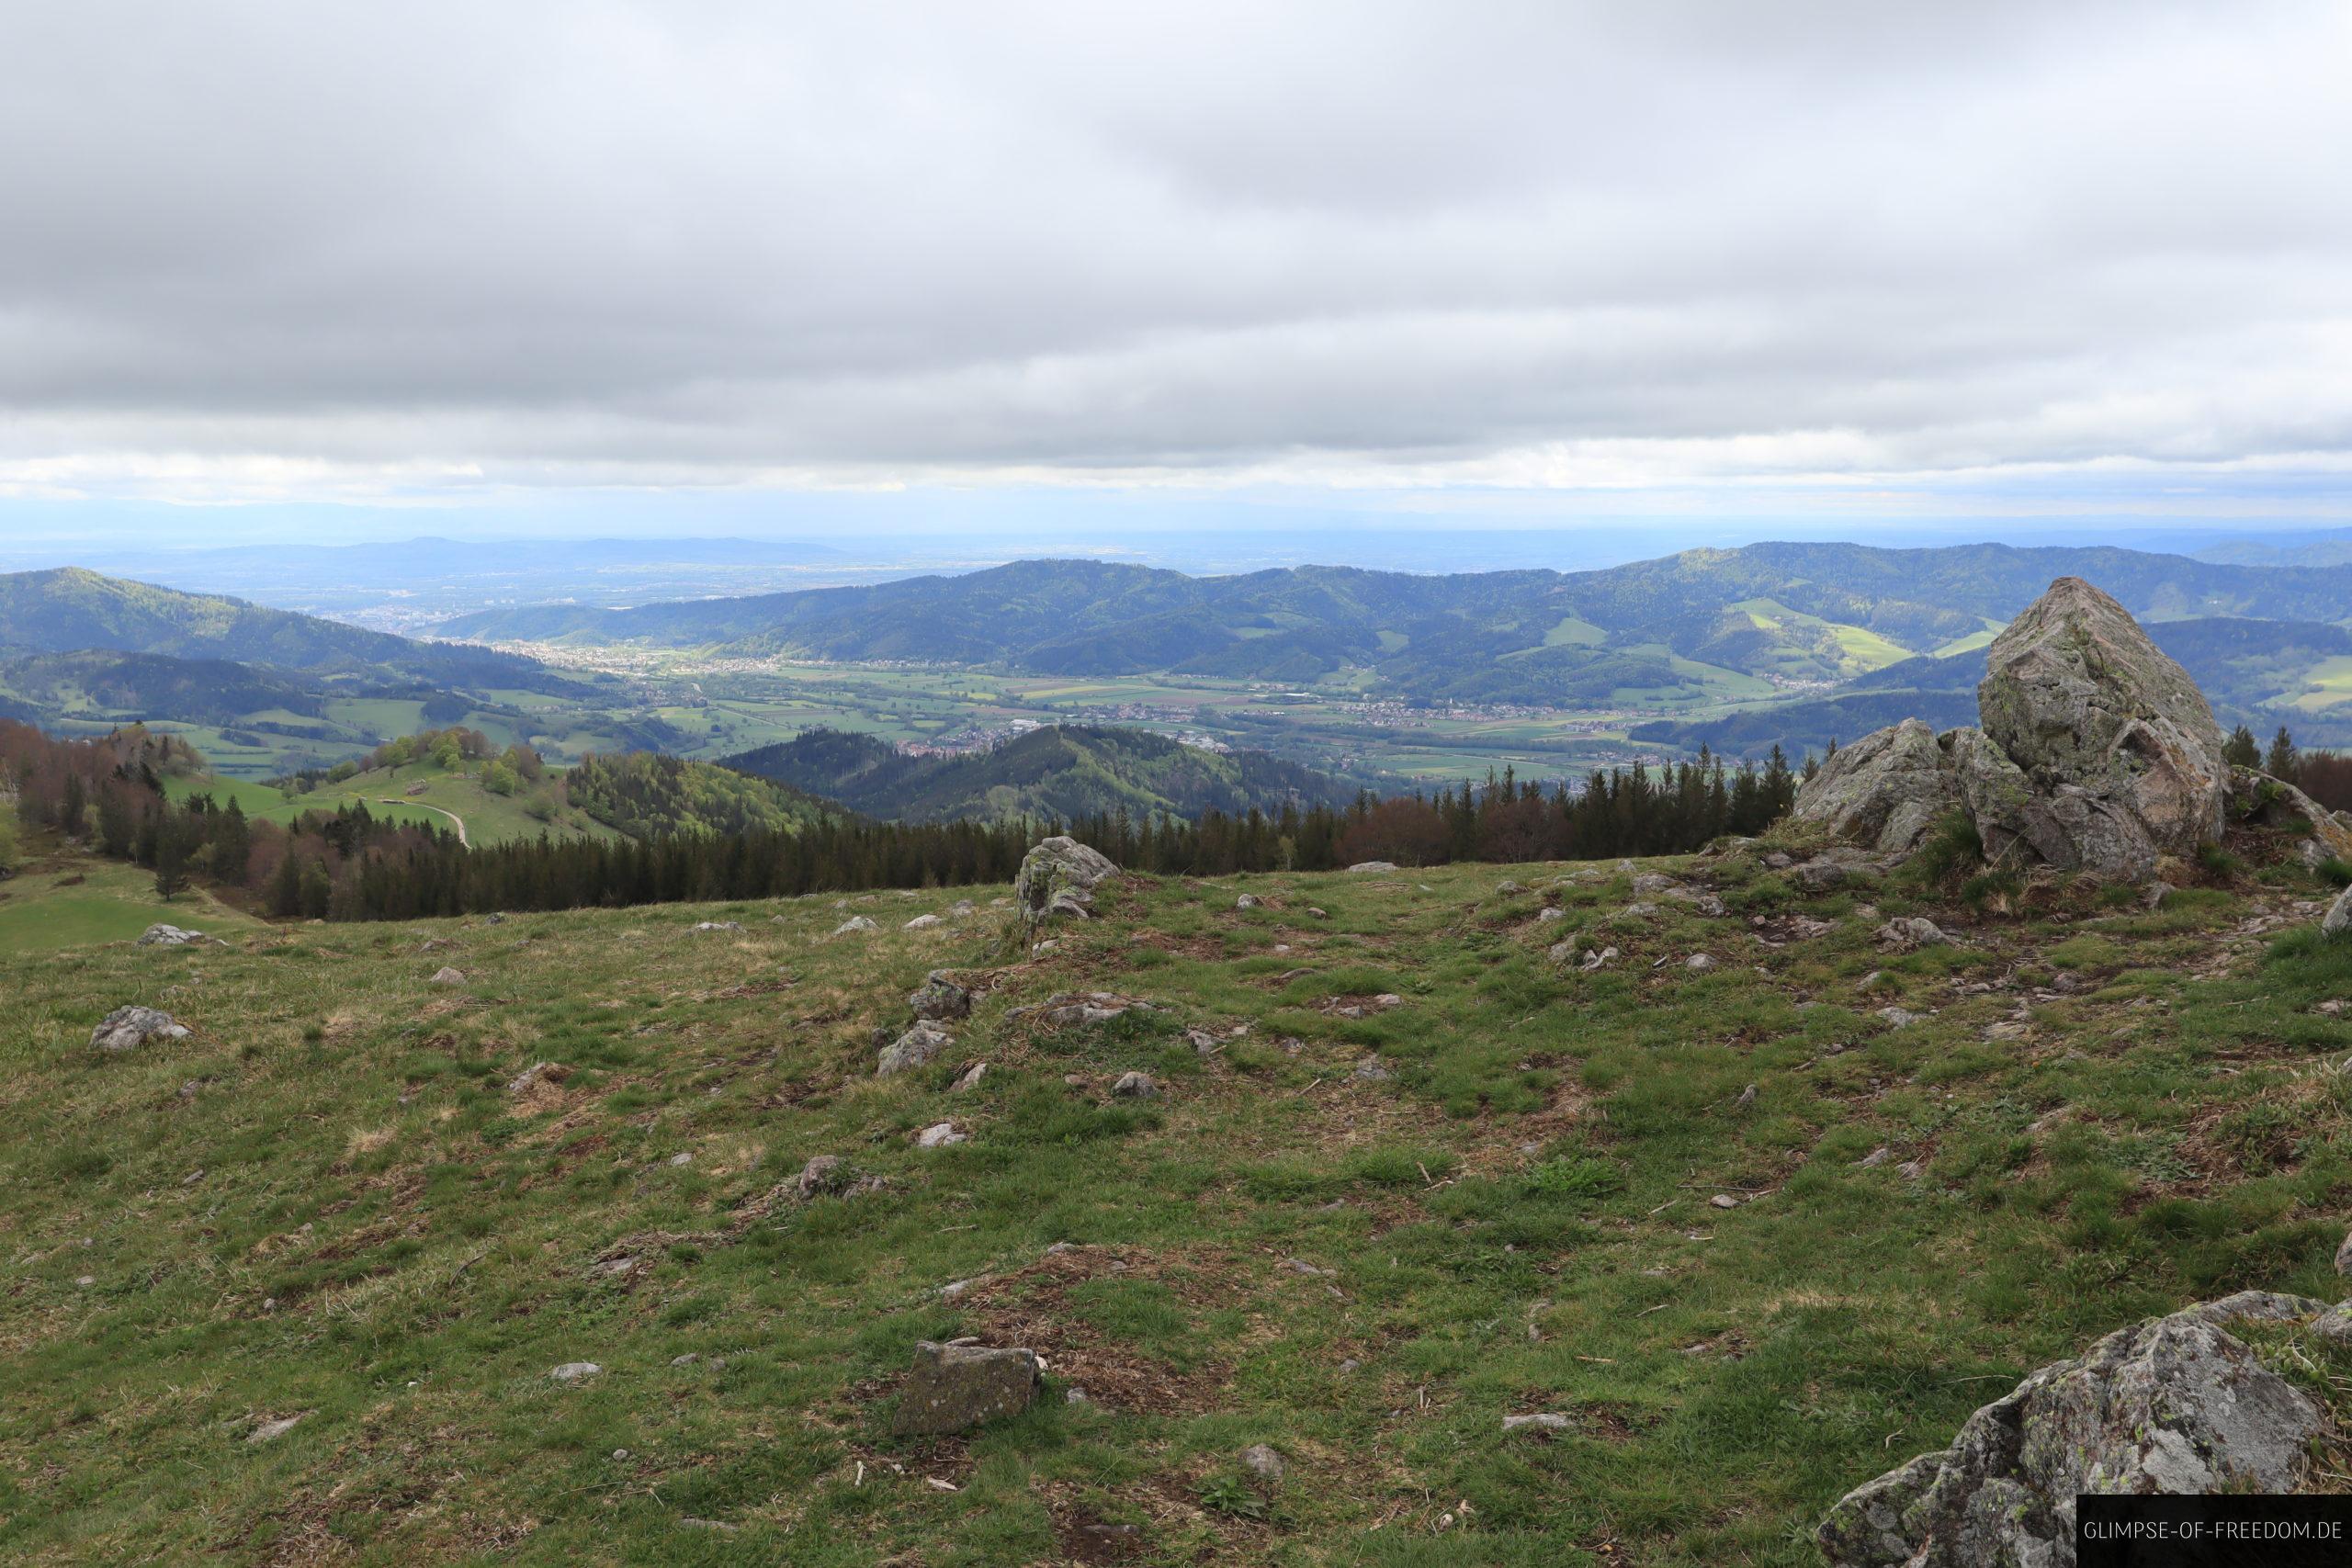 Sicht vom Gipfel des Hinterwaldkopf ins Tal